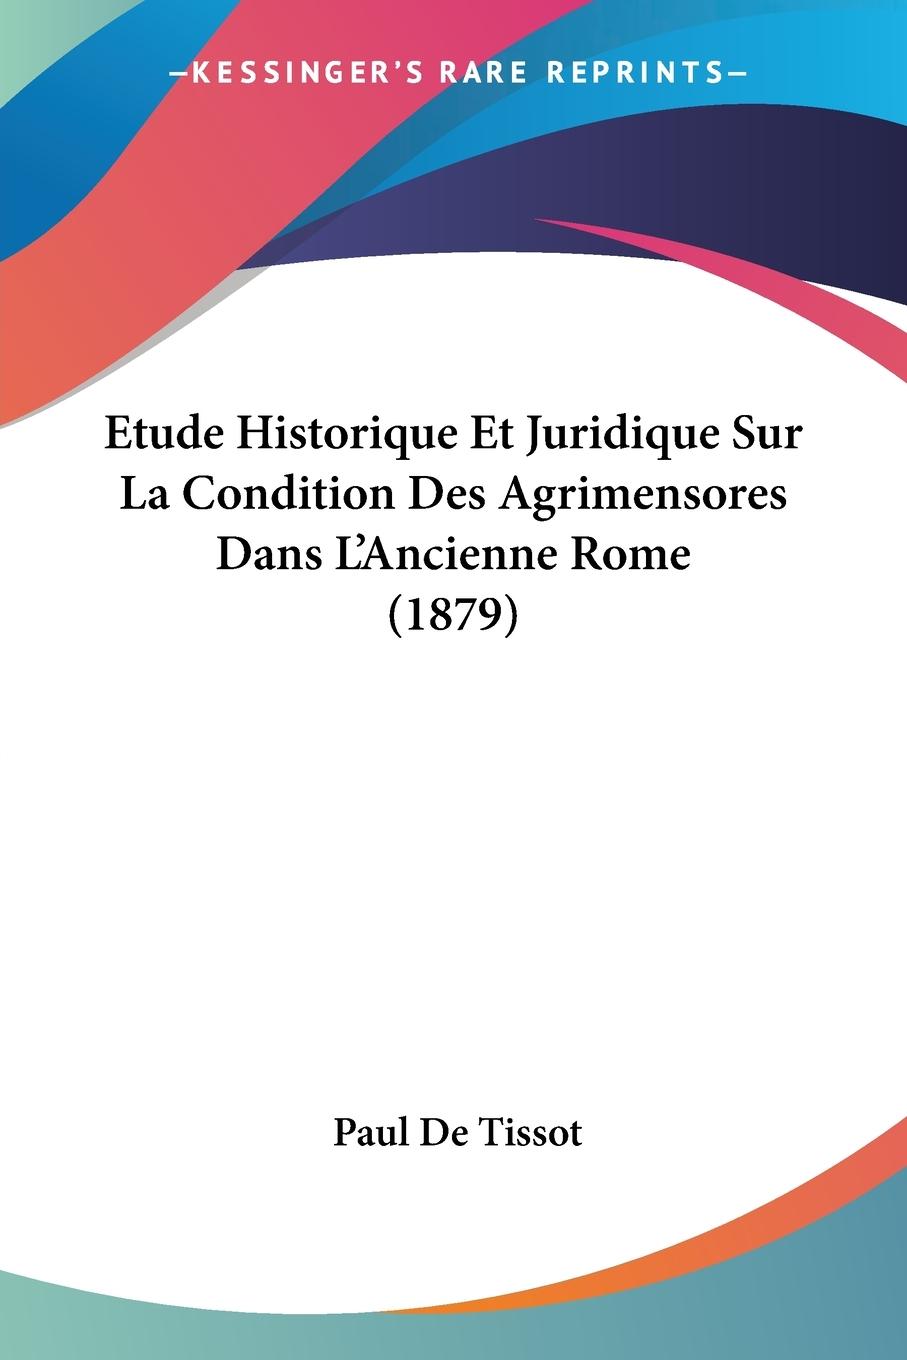 Etude Historique Et Juridique Sur La Condition Des Agrimensores Dans L Ancienne Rome (1879) - De Tissot, Paul